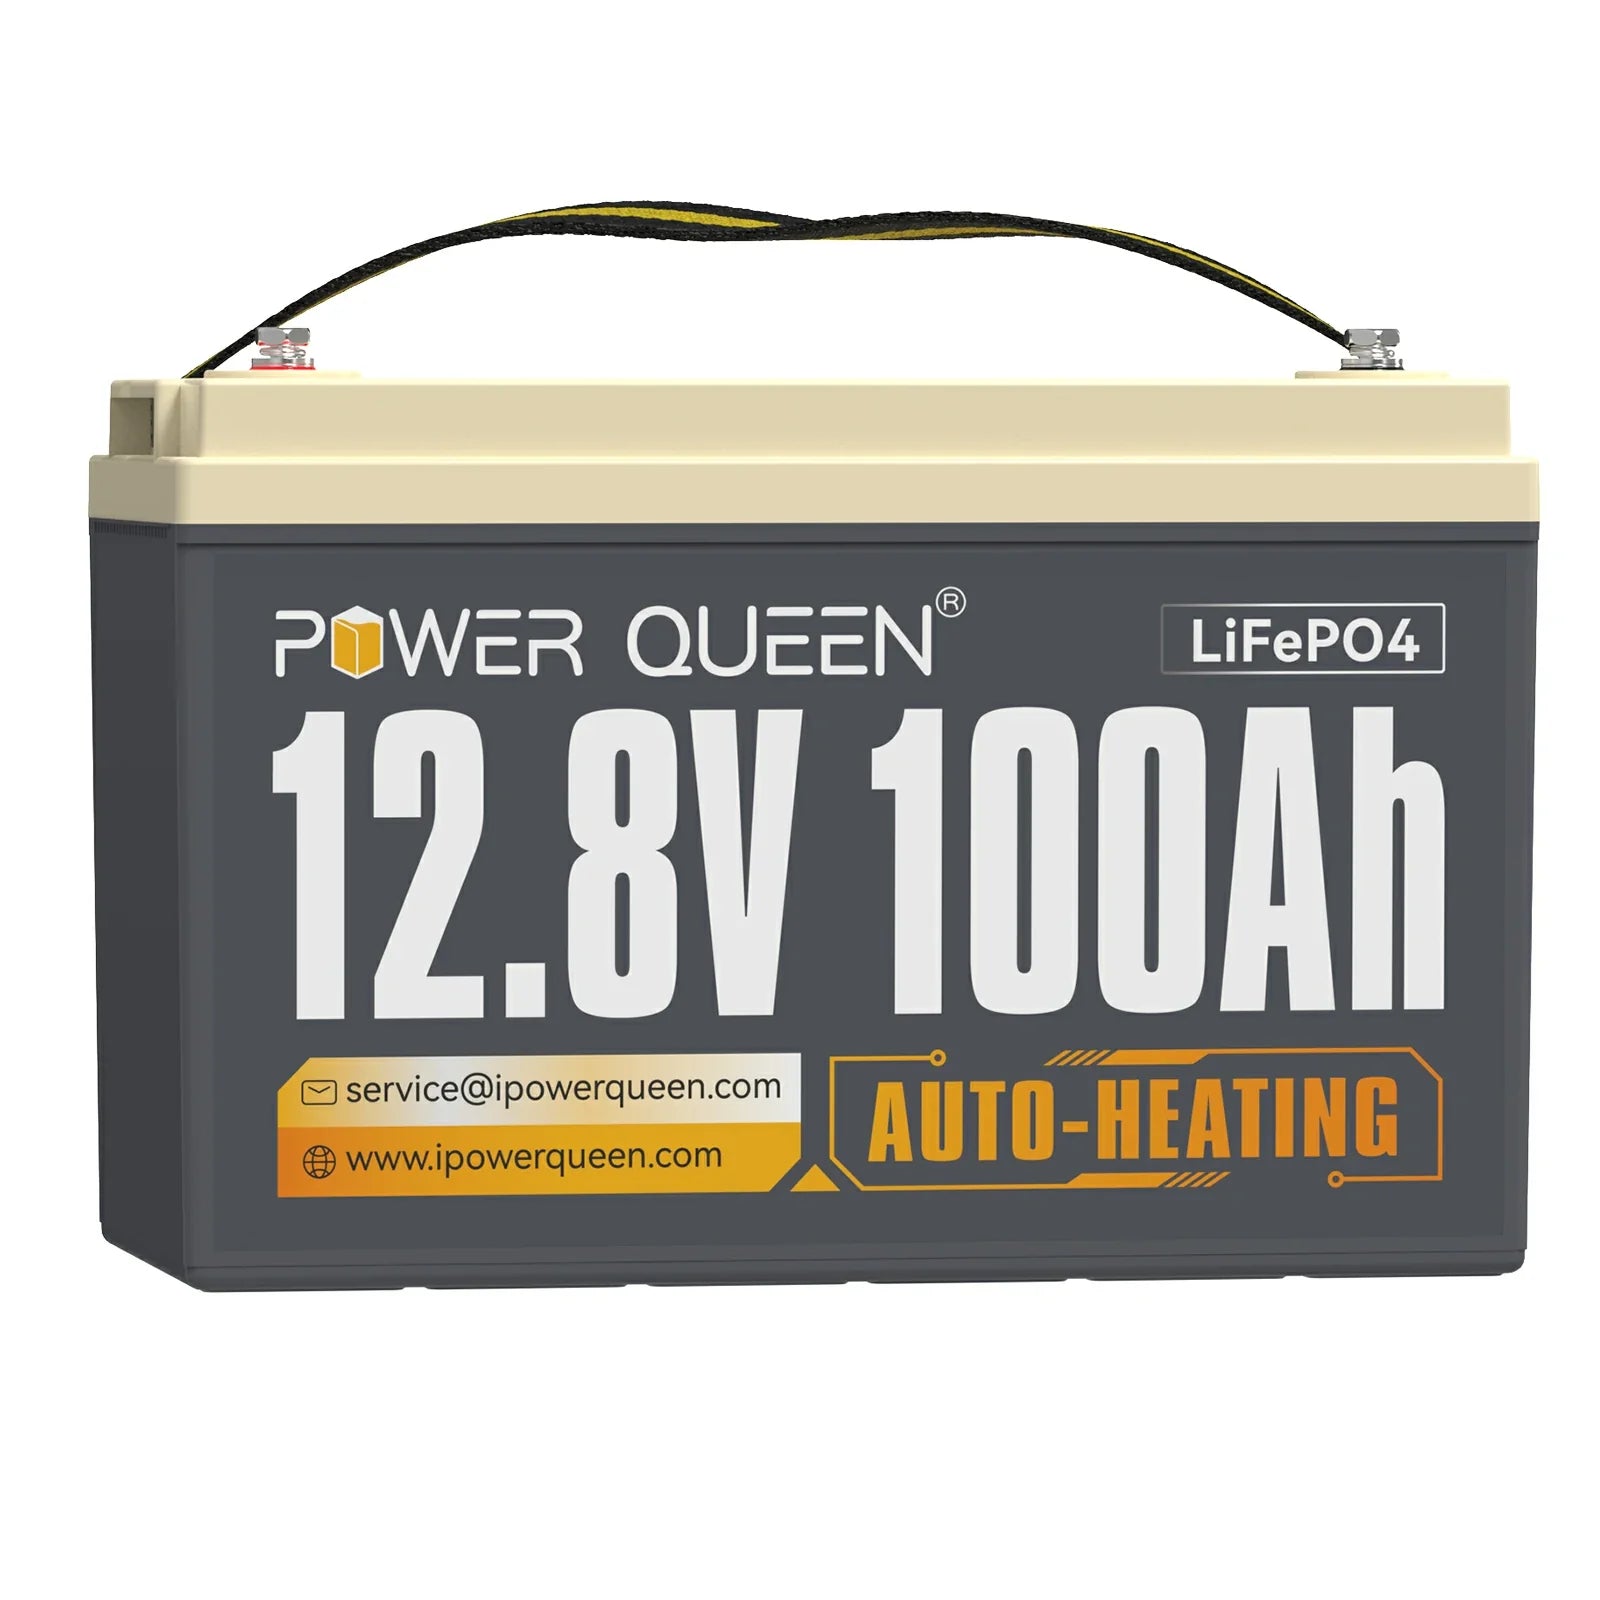 【0% IVA】Batería LiFePO4 autocalentable Power Queen de 12,8 V y 100 Ah, BMS integrado de 100 A